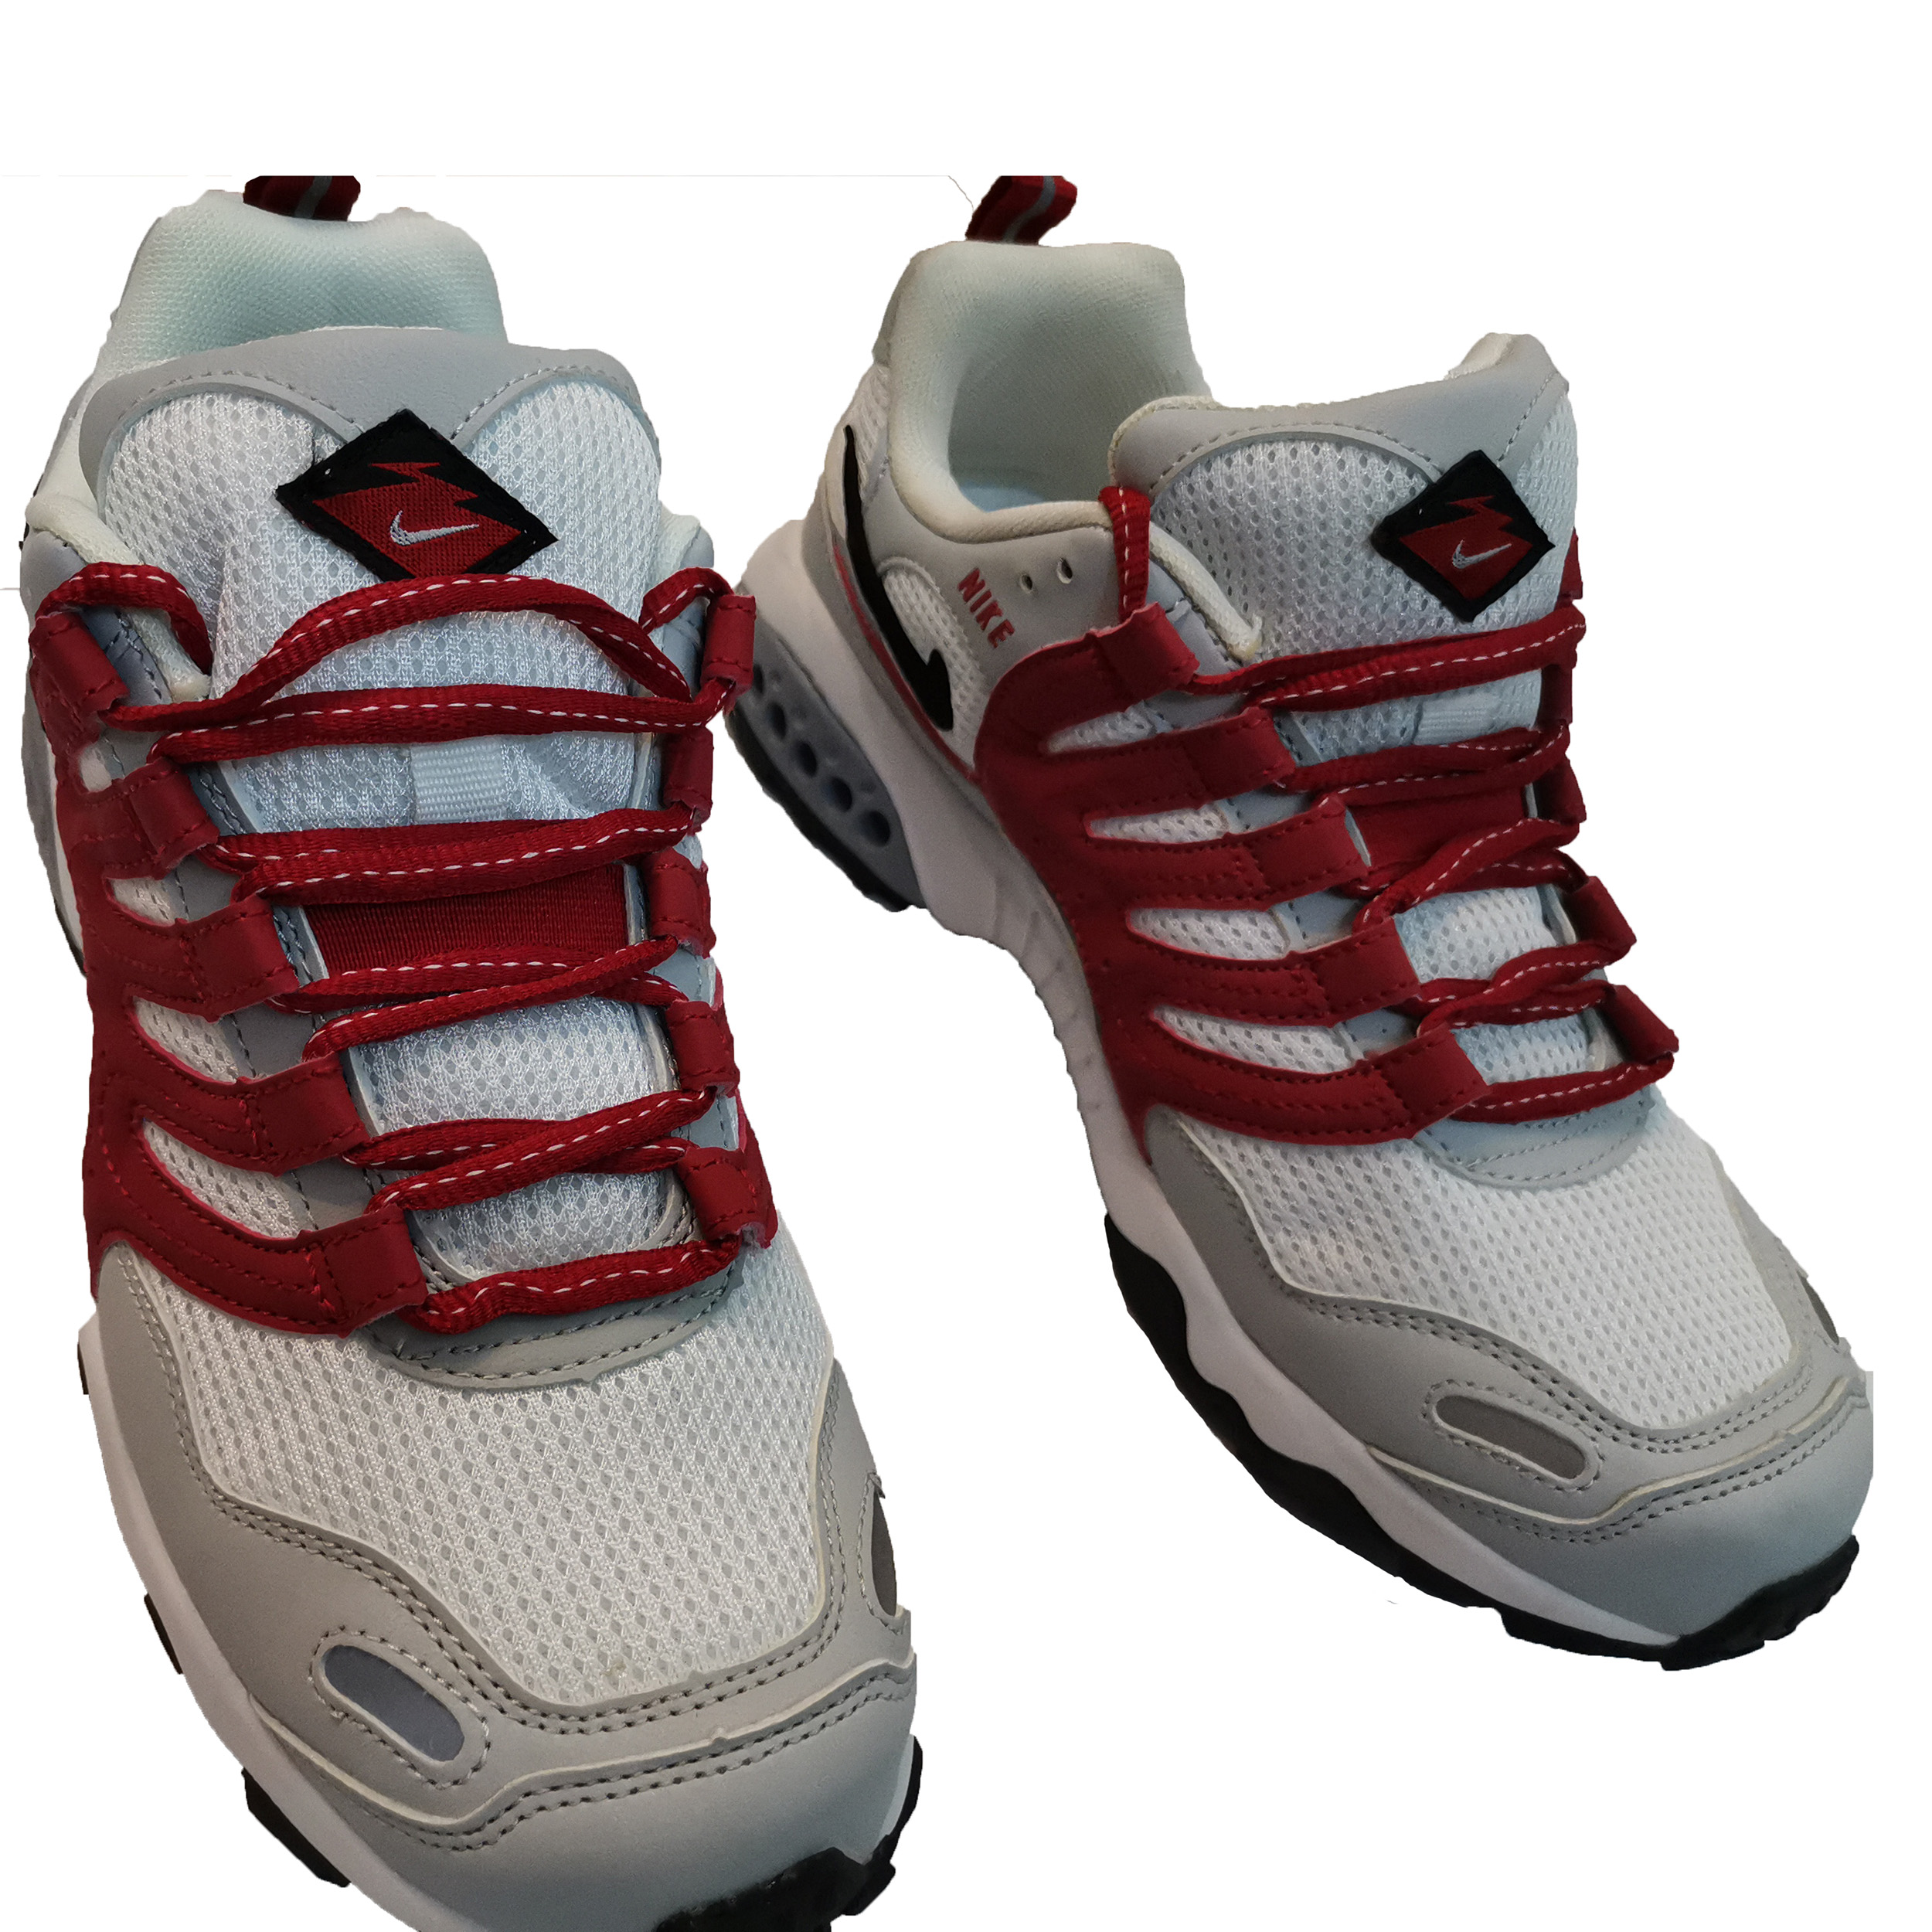 کفش مخصوص دویدن مردانه نایکی مدل nike air max کد 97